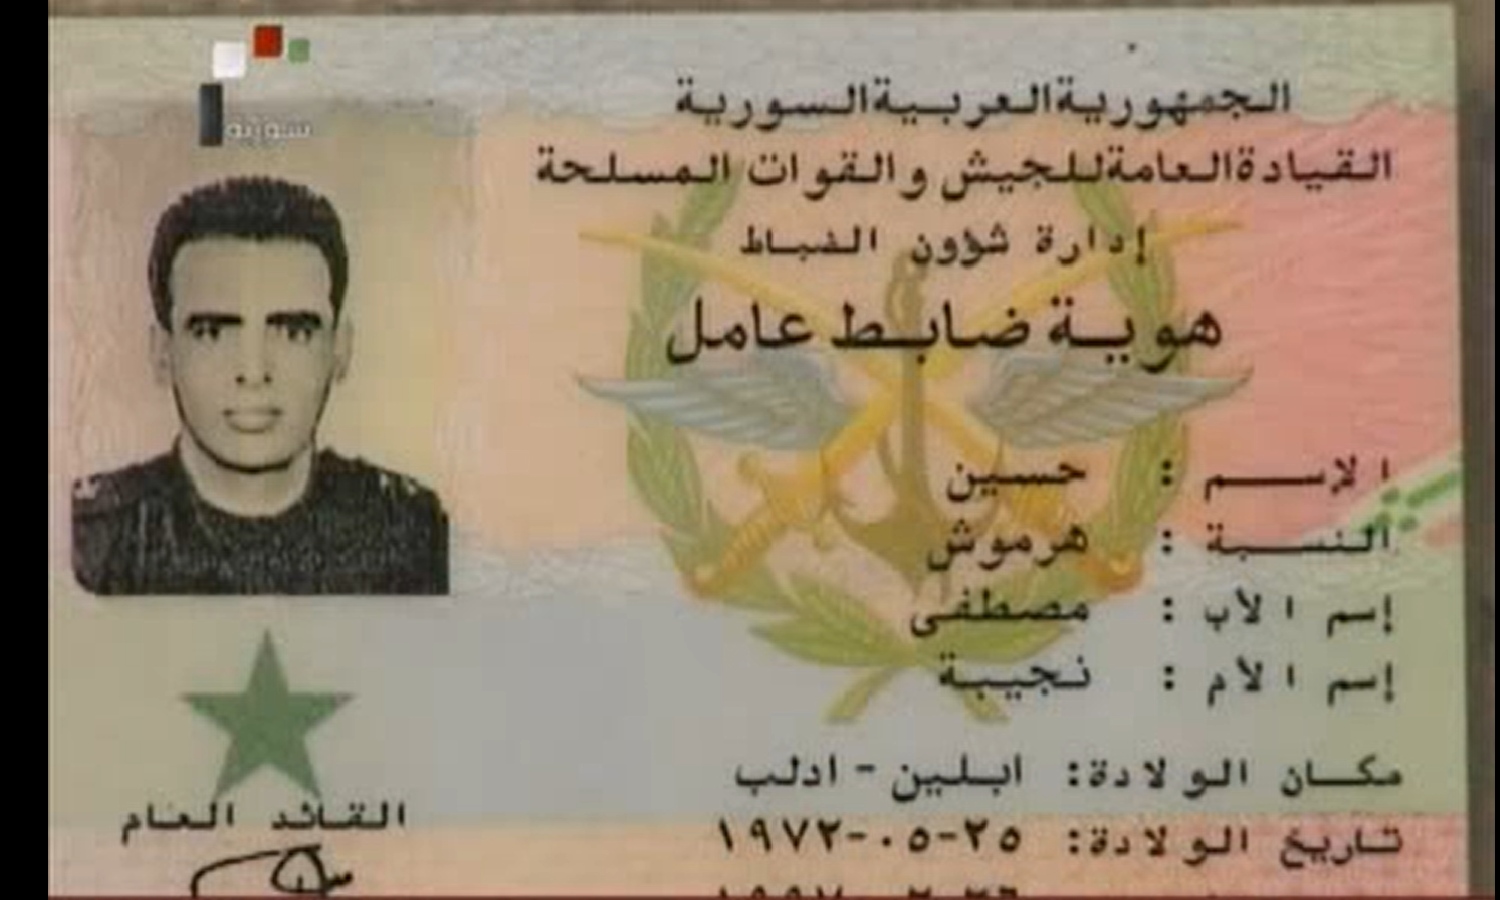 هوية المقدم حسين هرموش العسكرية عرضتها وسائل إعلام النظام السوري-15 من أيلول 2011 (syrianRTV)